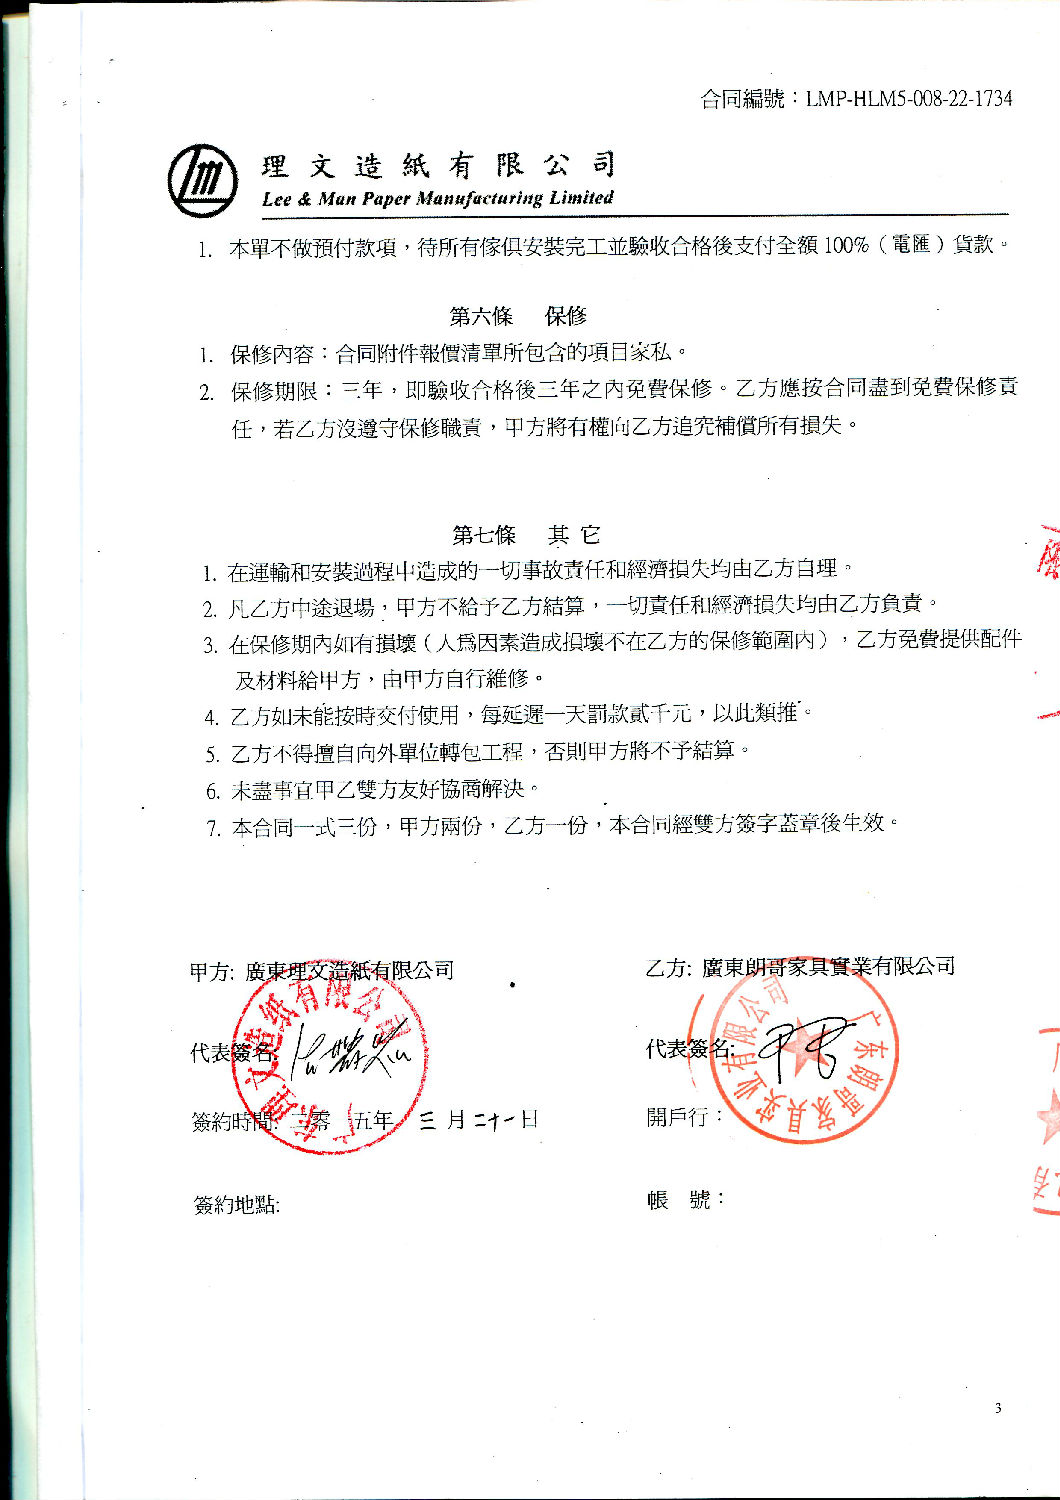 广东理文造纸有限公司工程配套案例